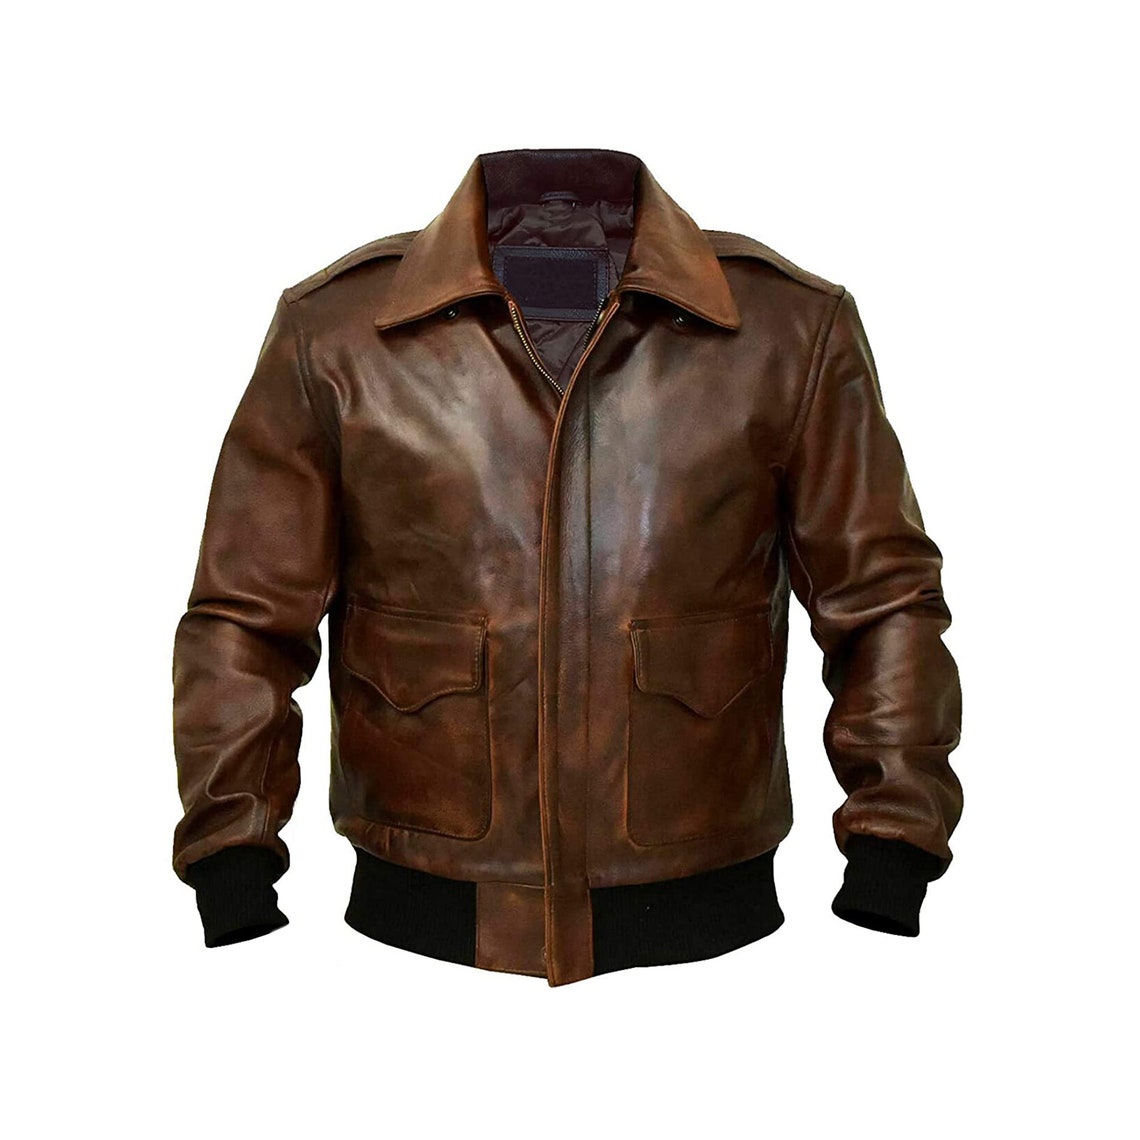 A2 Bomber Flight Bomber Handmade Real Leather Jacket for Men | Etsy